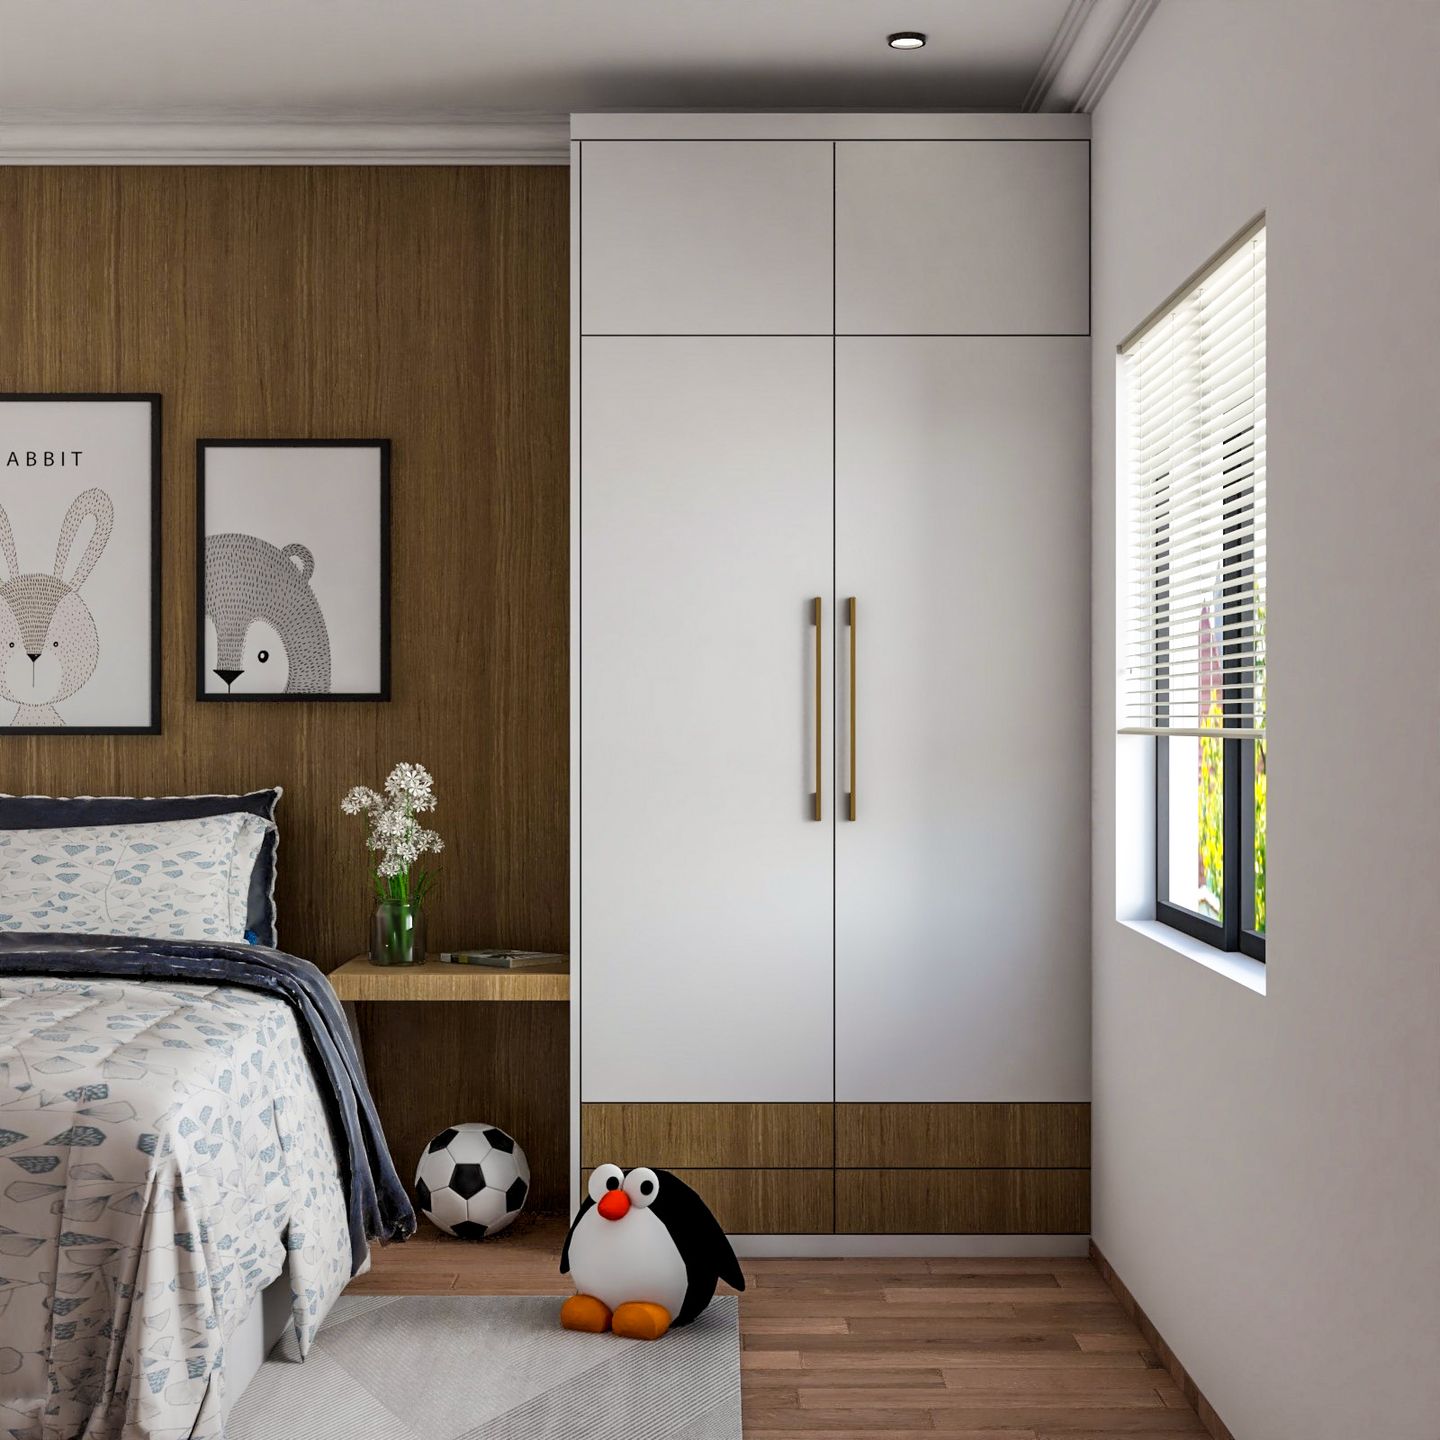 2-Door Swing Wardrobe Design In Brown And White - Livspace